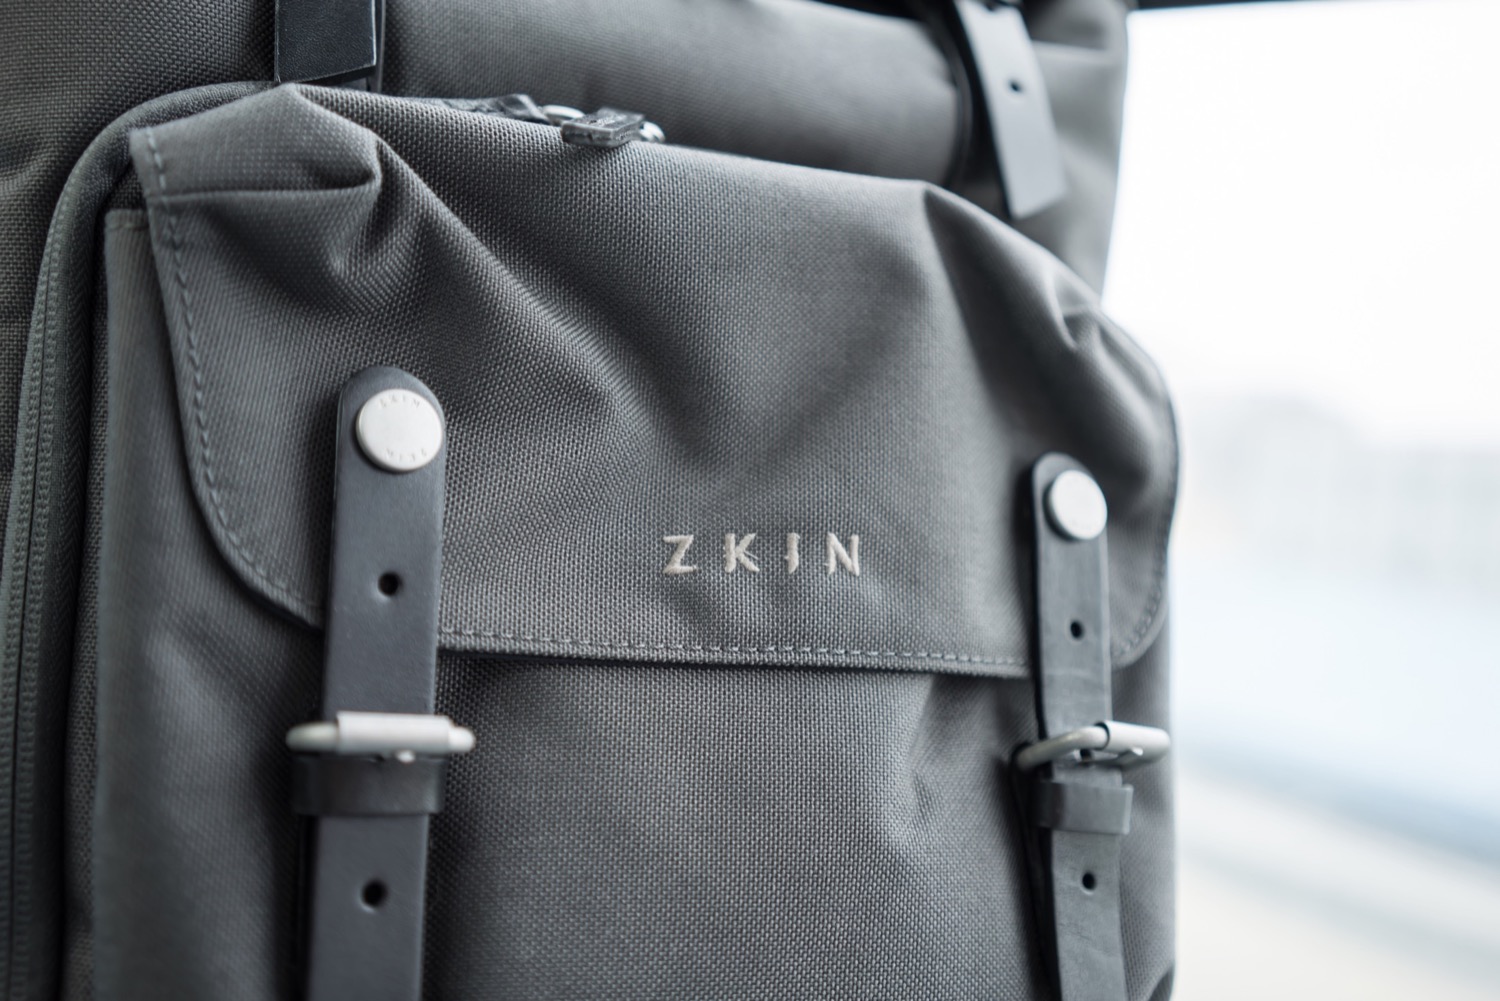 Zkin Yeti双肩摄影背包:颜值和功能之间的平衡